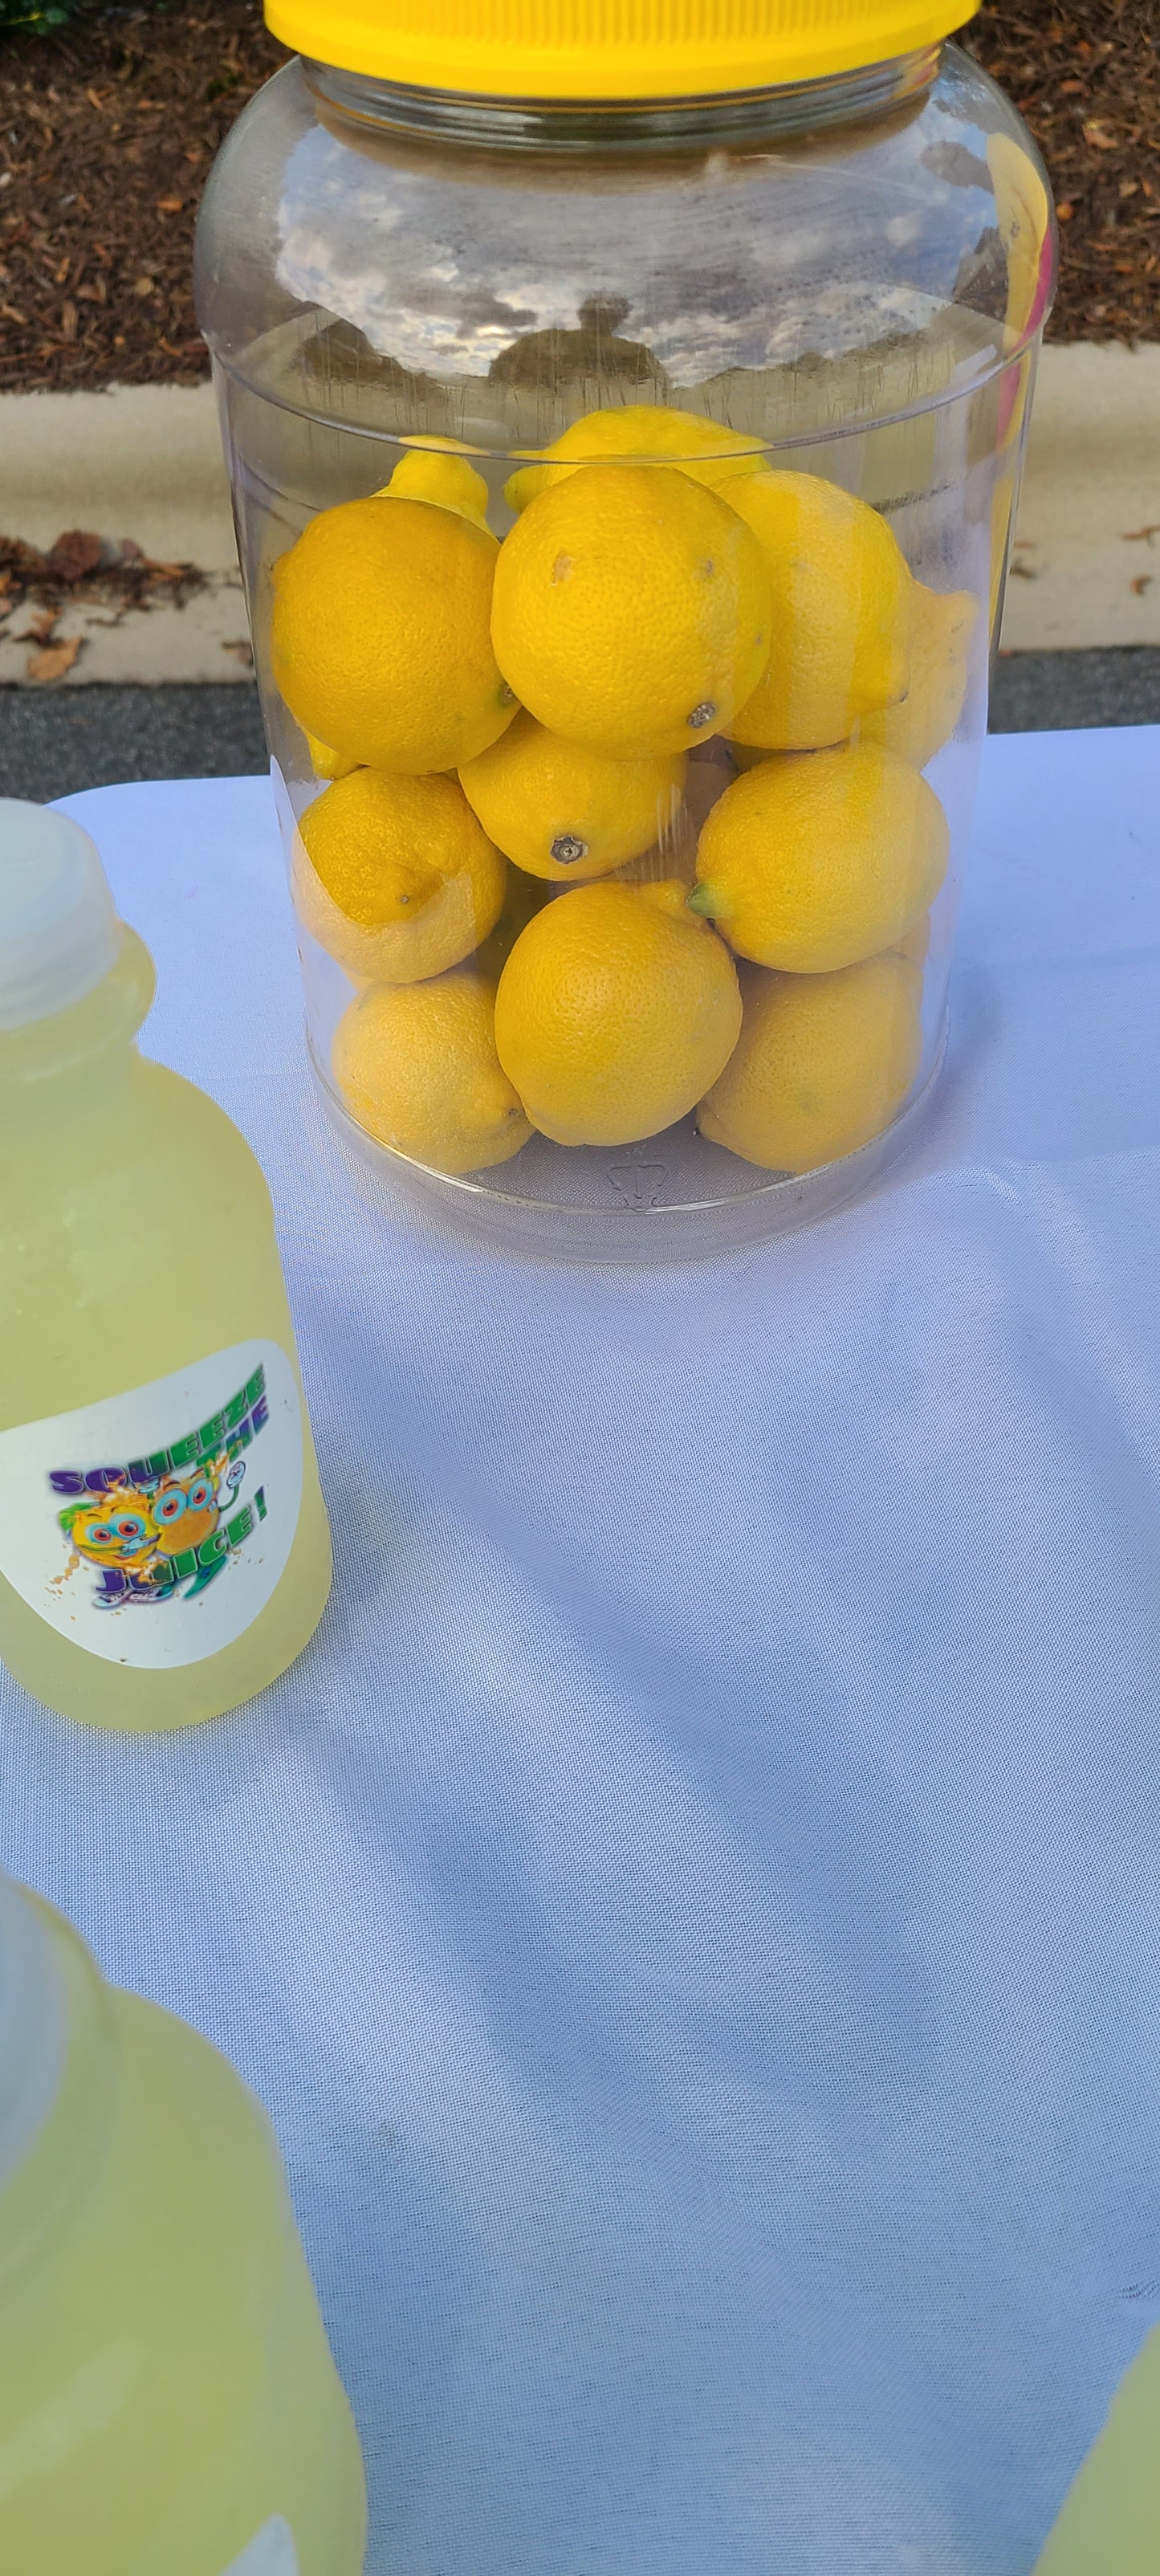 Squeeze the juice Lemonade